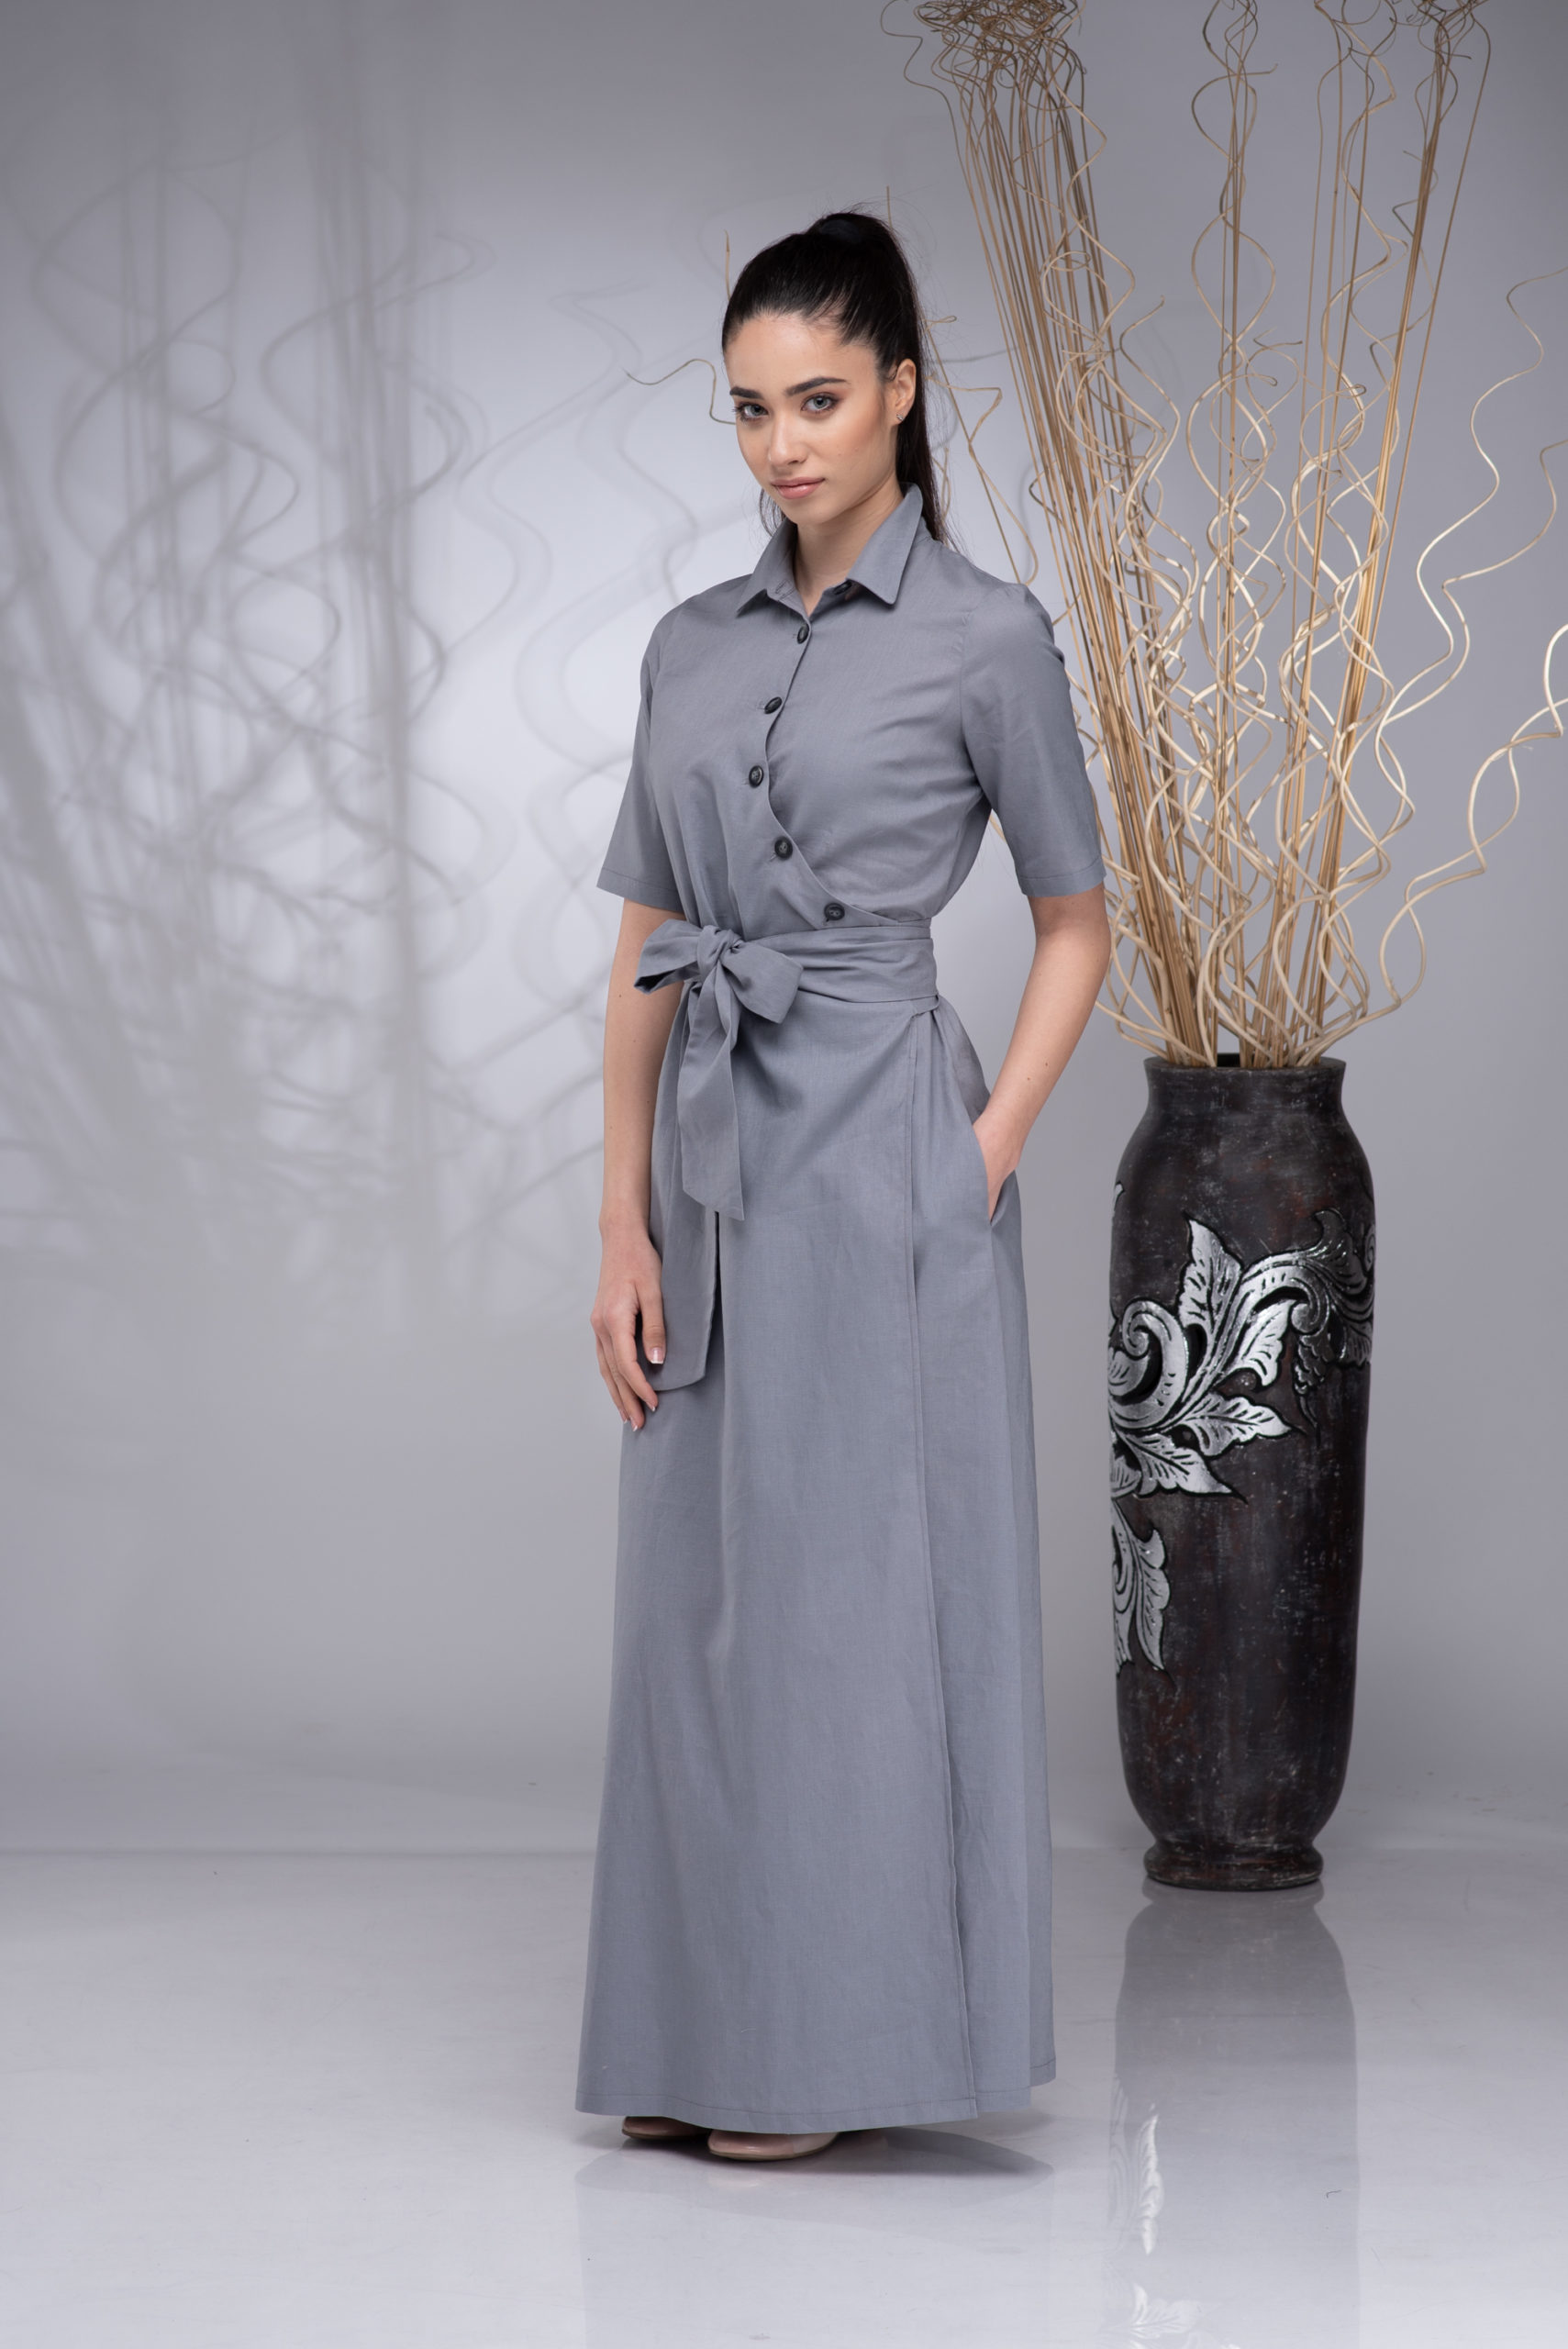 Linen Belt Dress Maxi Linen Dress Women Linen Boho Dress Long Wrap Linen Dress for Women Button up Dress